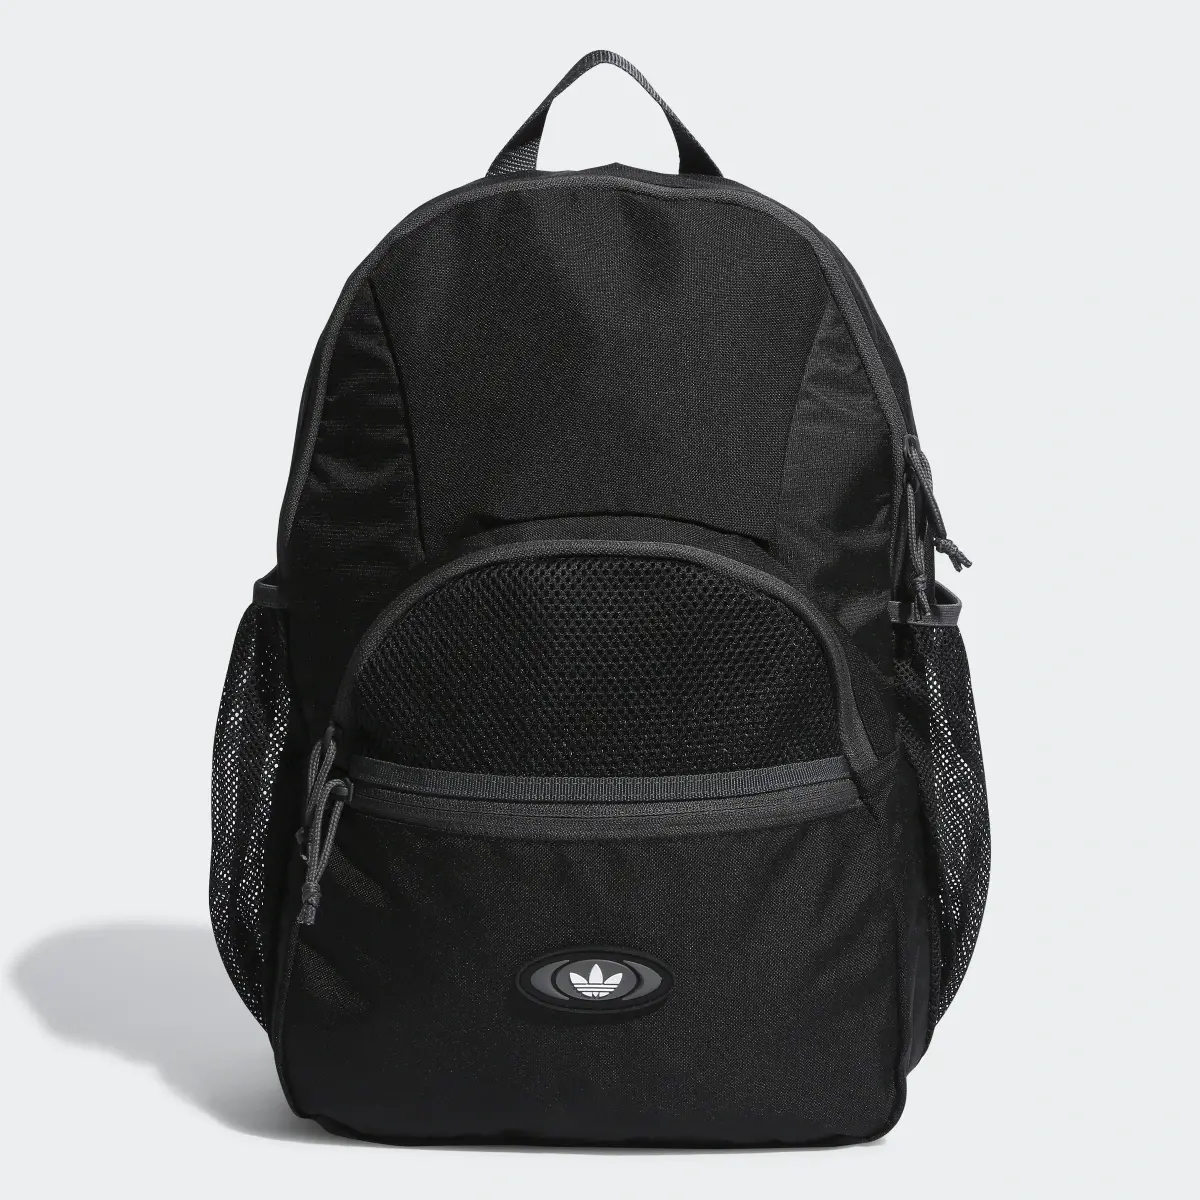 Adidas Rekive Backpack. 1